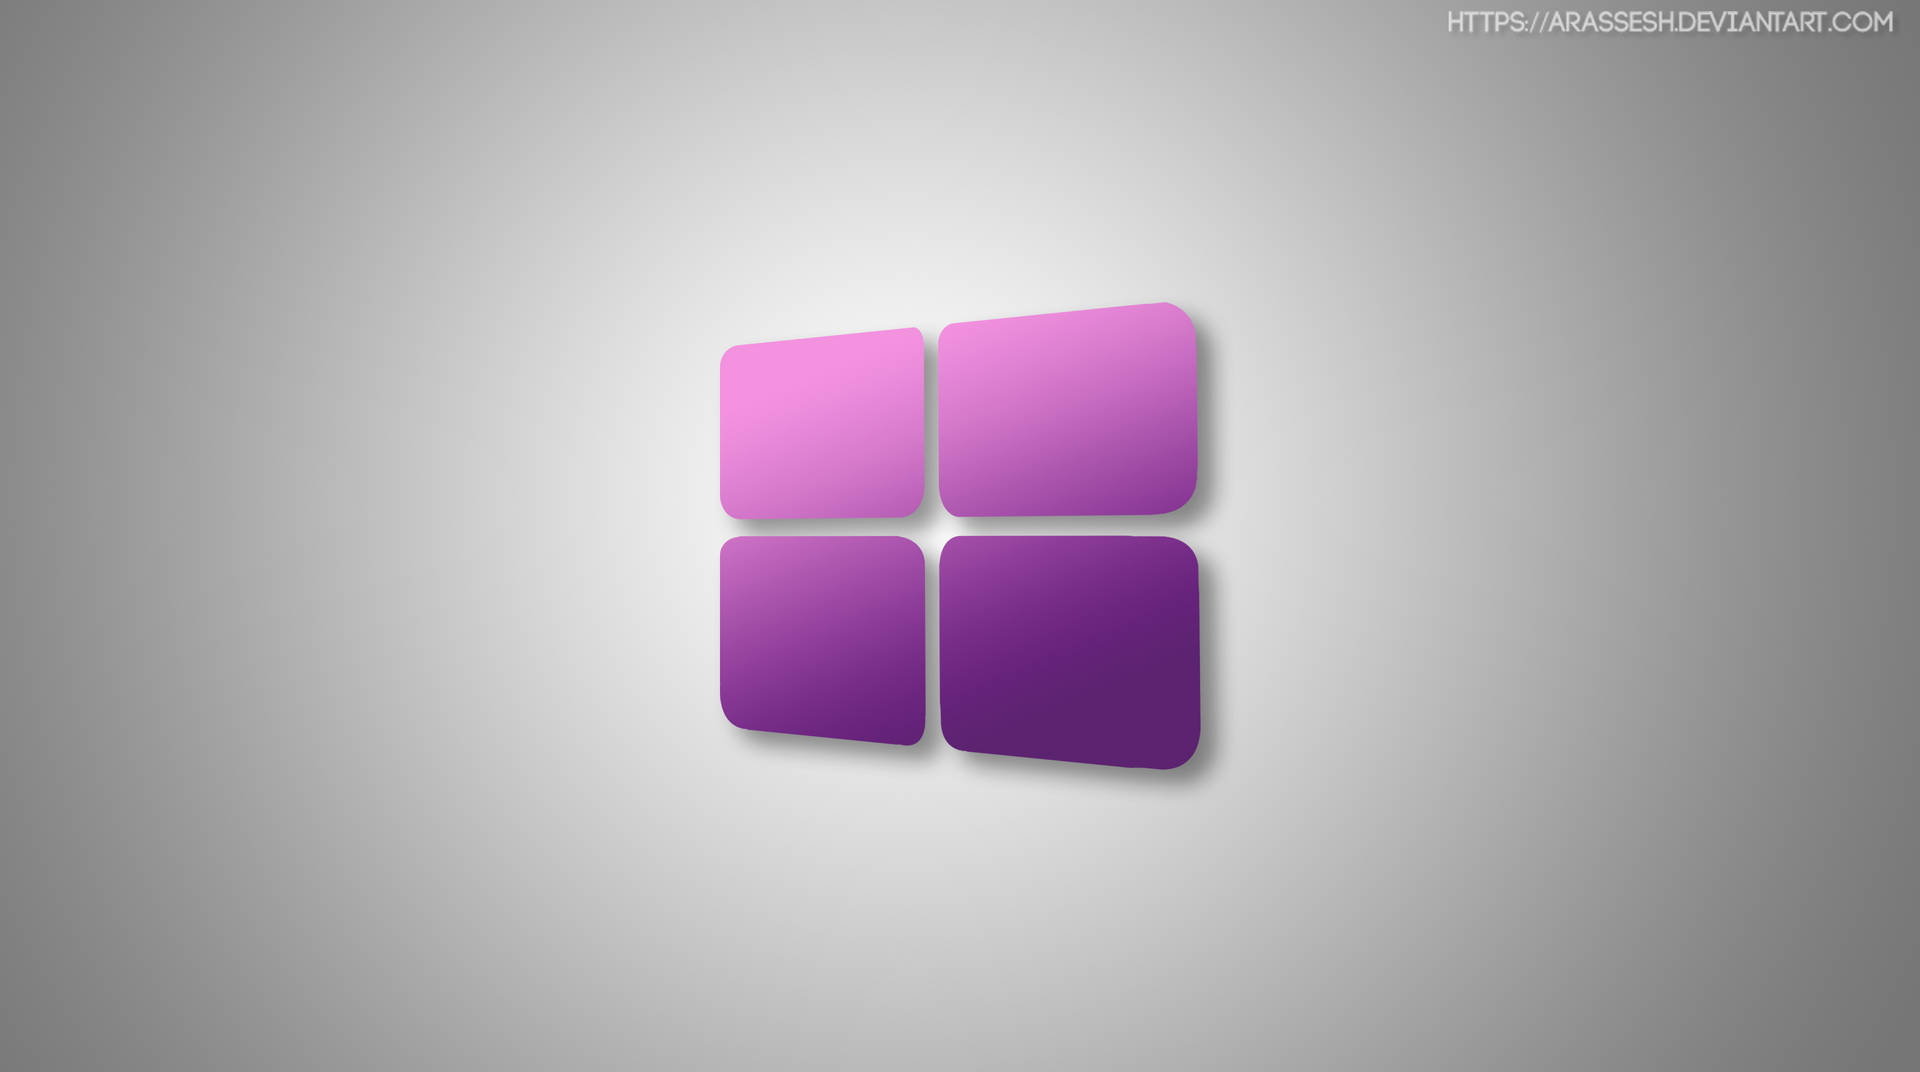 Minimalist Windows 10 Hd Purple Logo Wallpaper